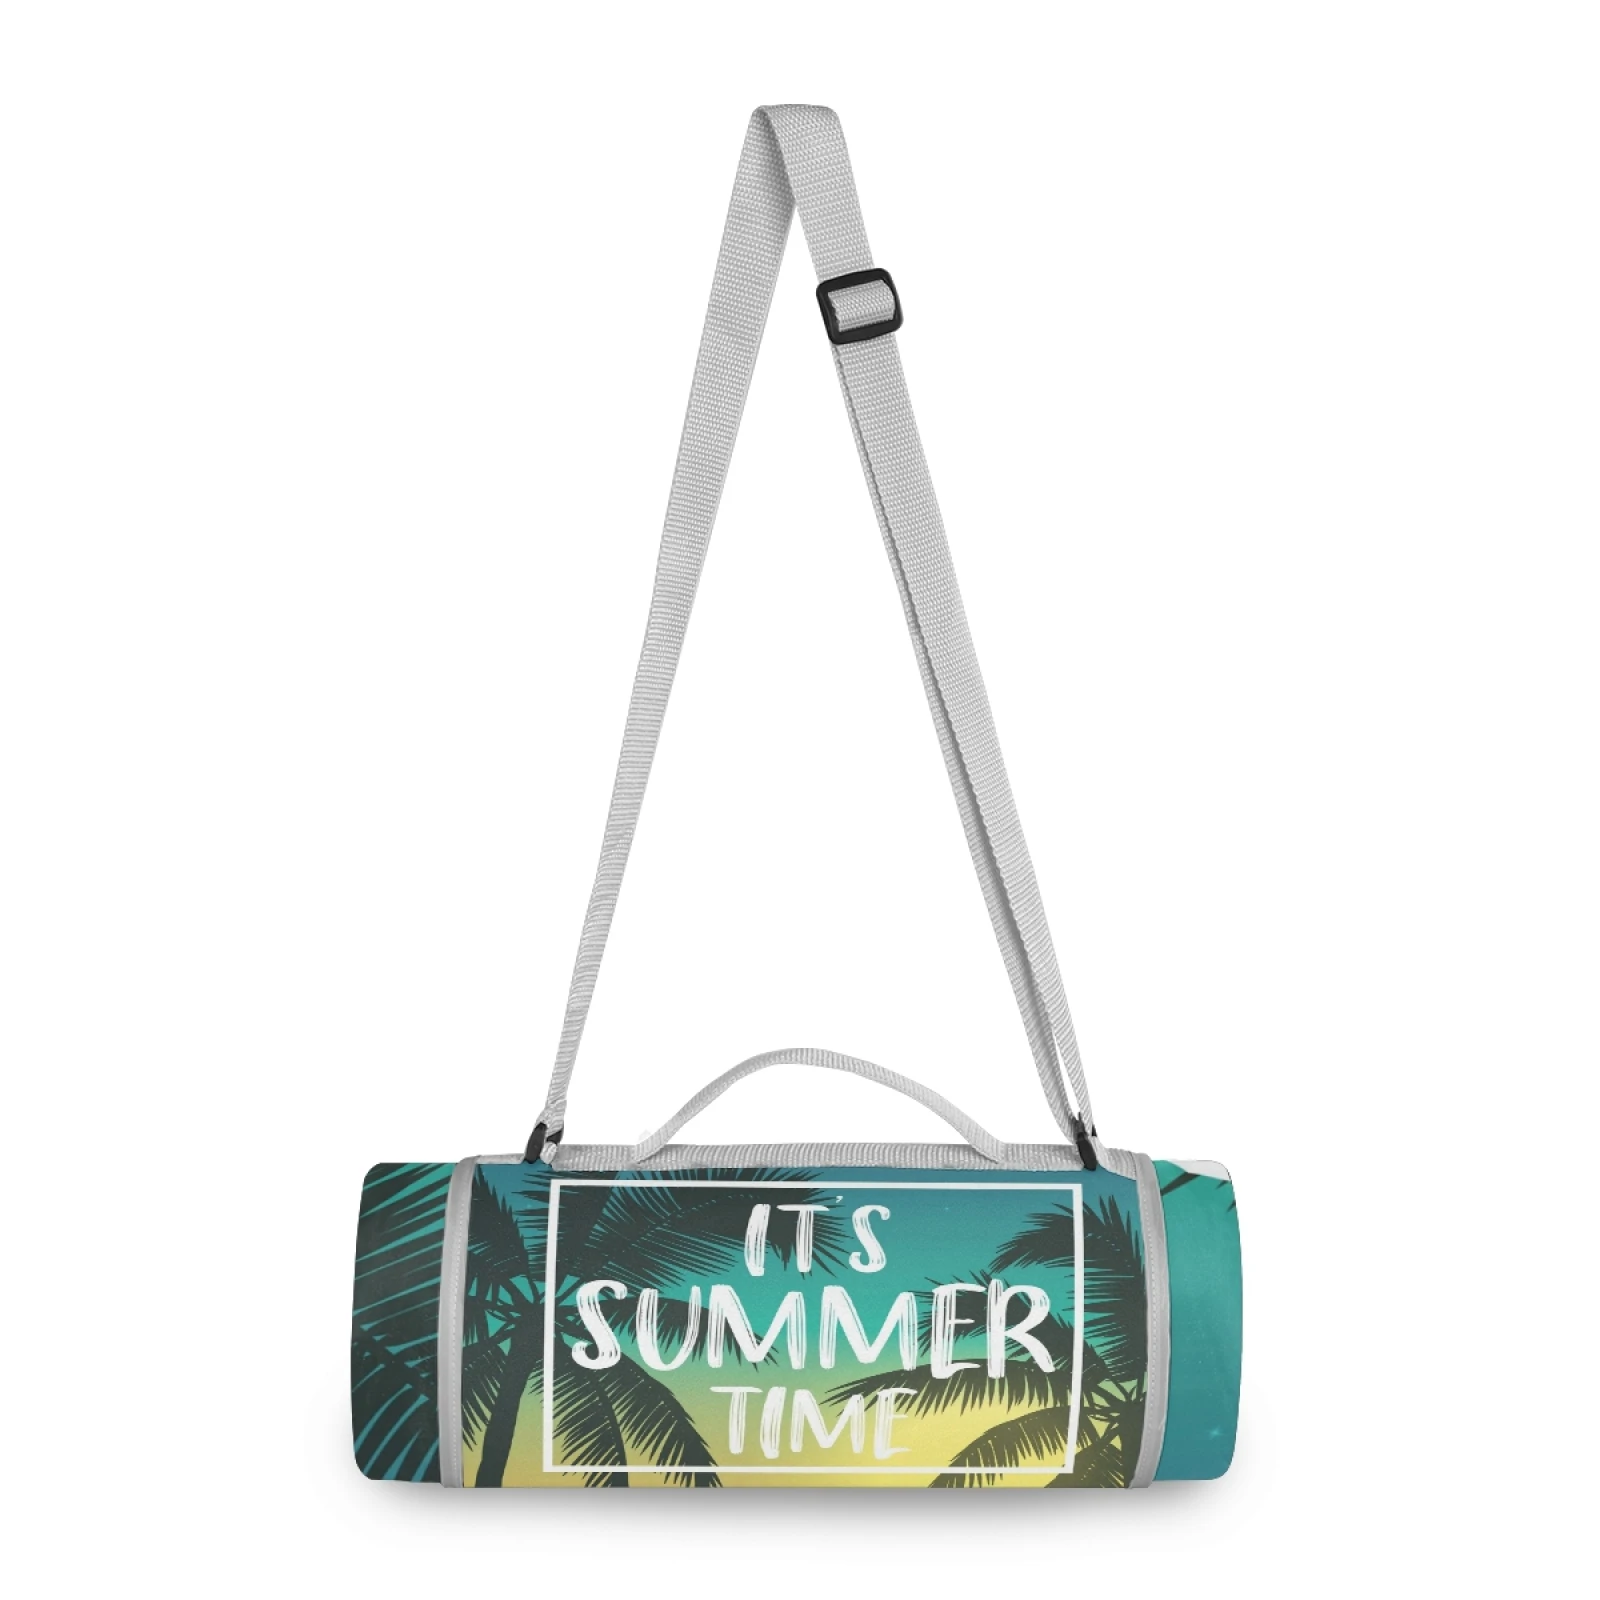 Top ranking Outdoor Waterproof Picnic Blanket Light Weight with Soft Fleece customs logo portable summer beach mat